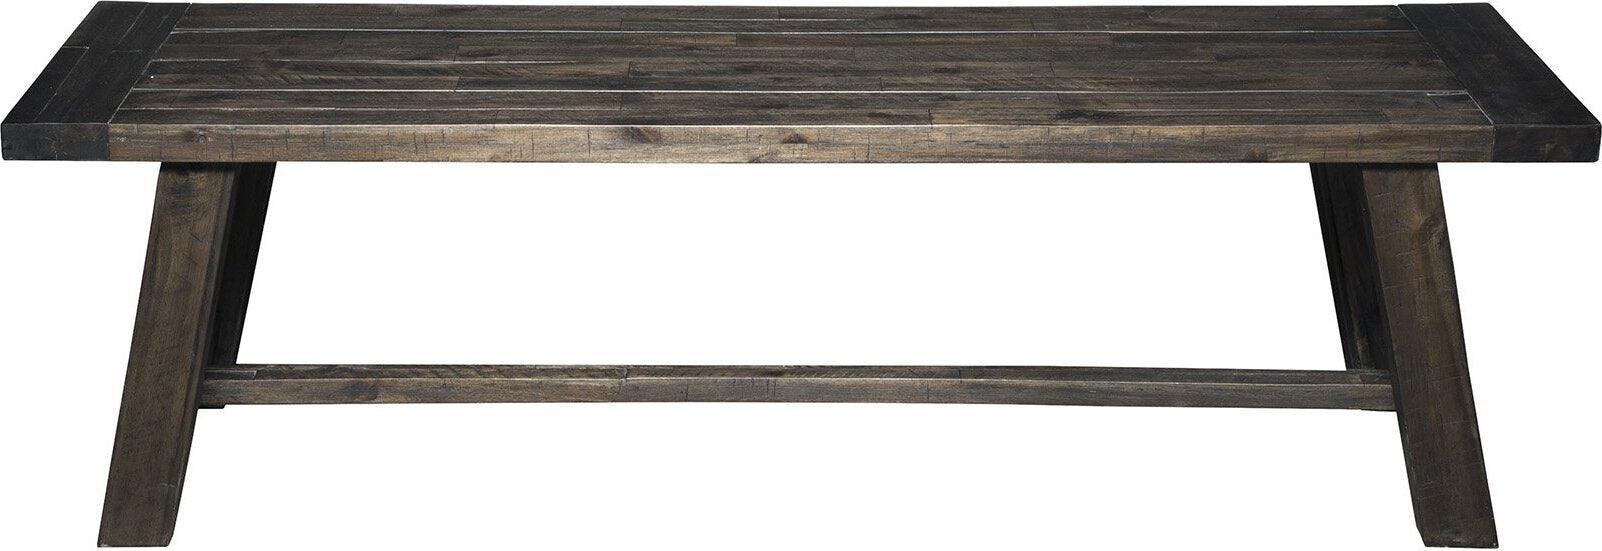 Alpine Furniture Benches - Newberry Bench Salvaged Grey